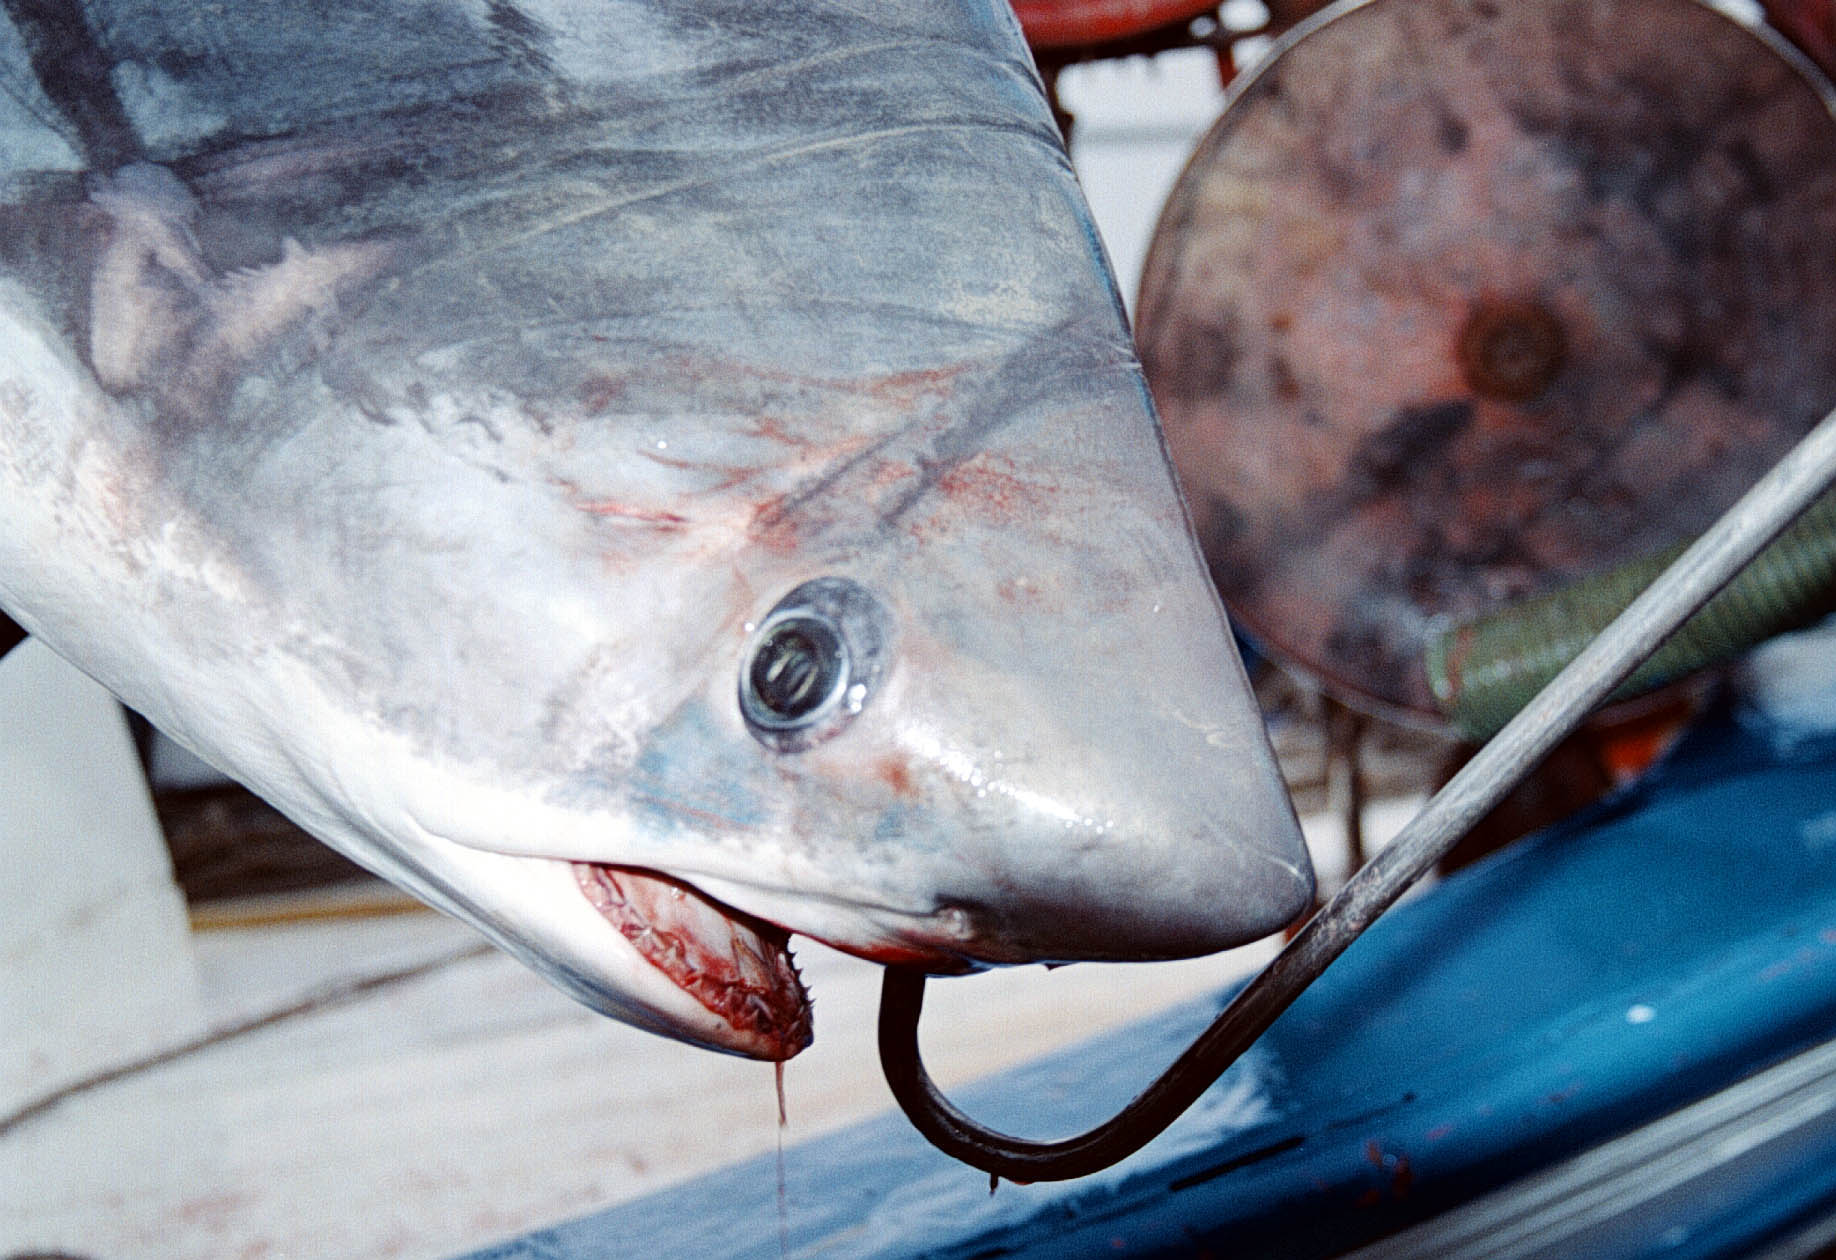 150 κιλά ο καρχαρίας που έπιασαν ψαράδες στη Νέα Μηχανιώνα 